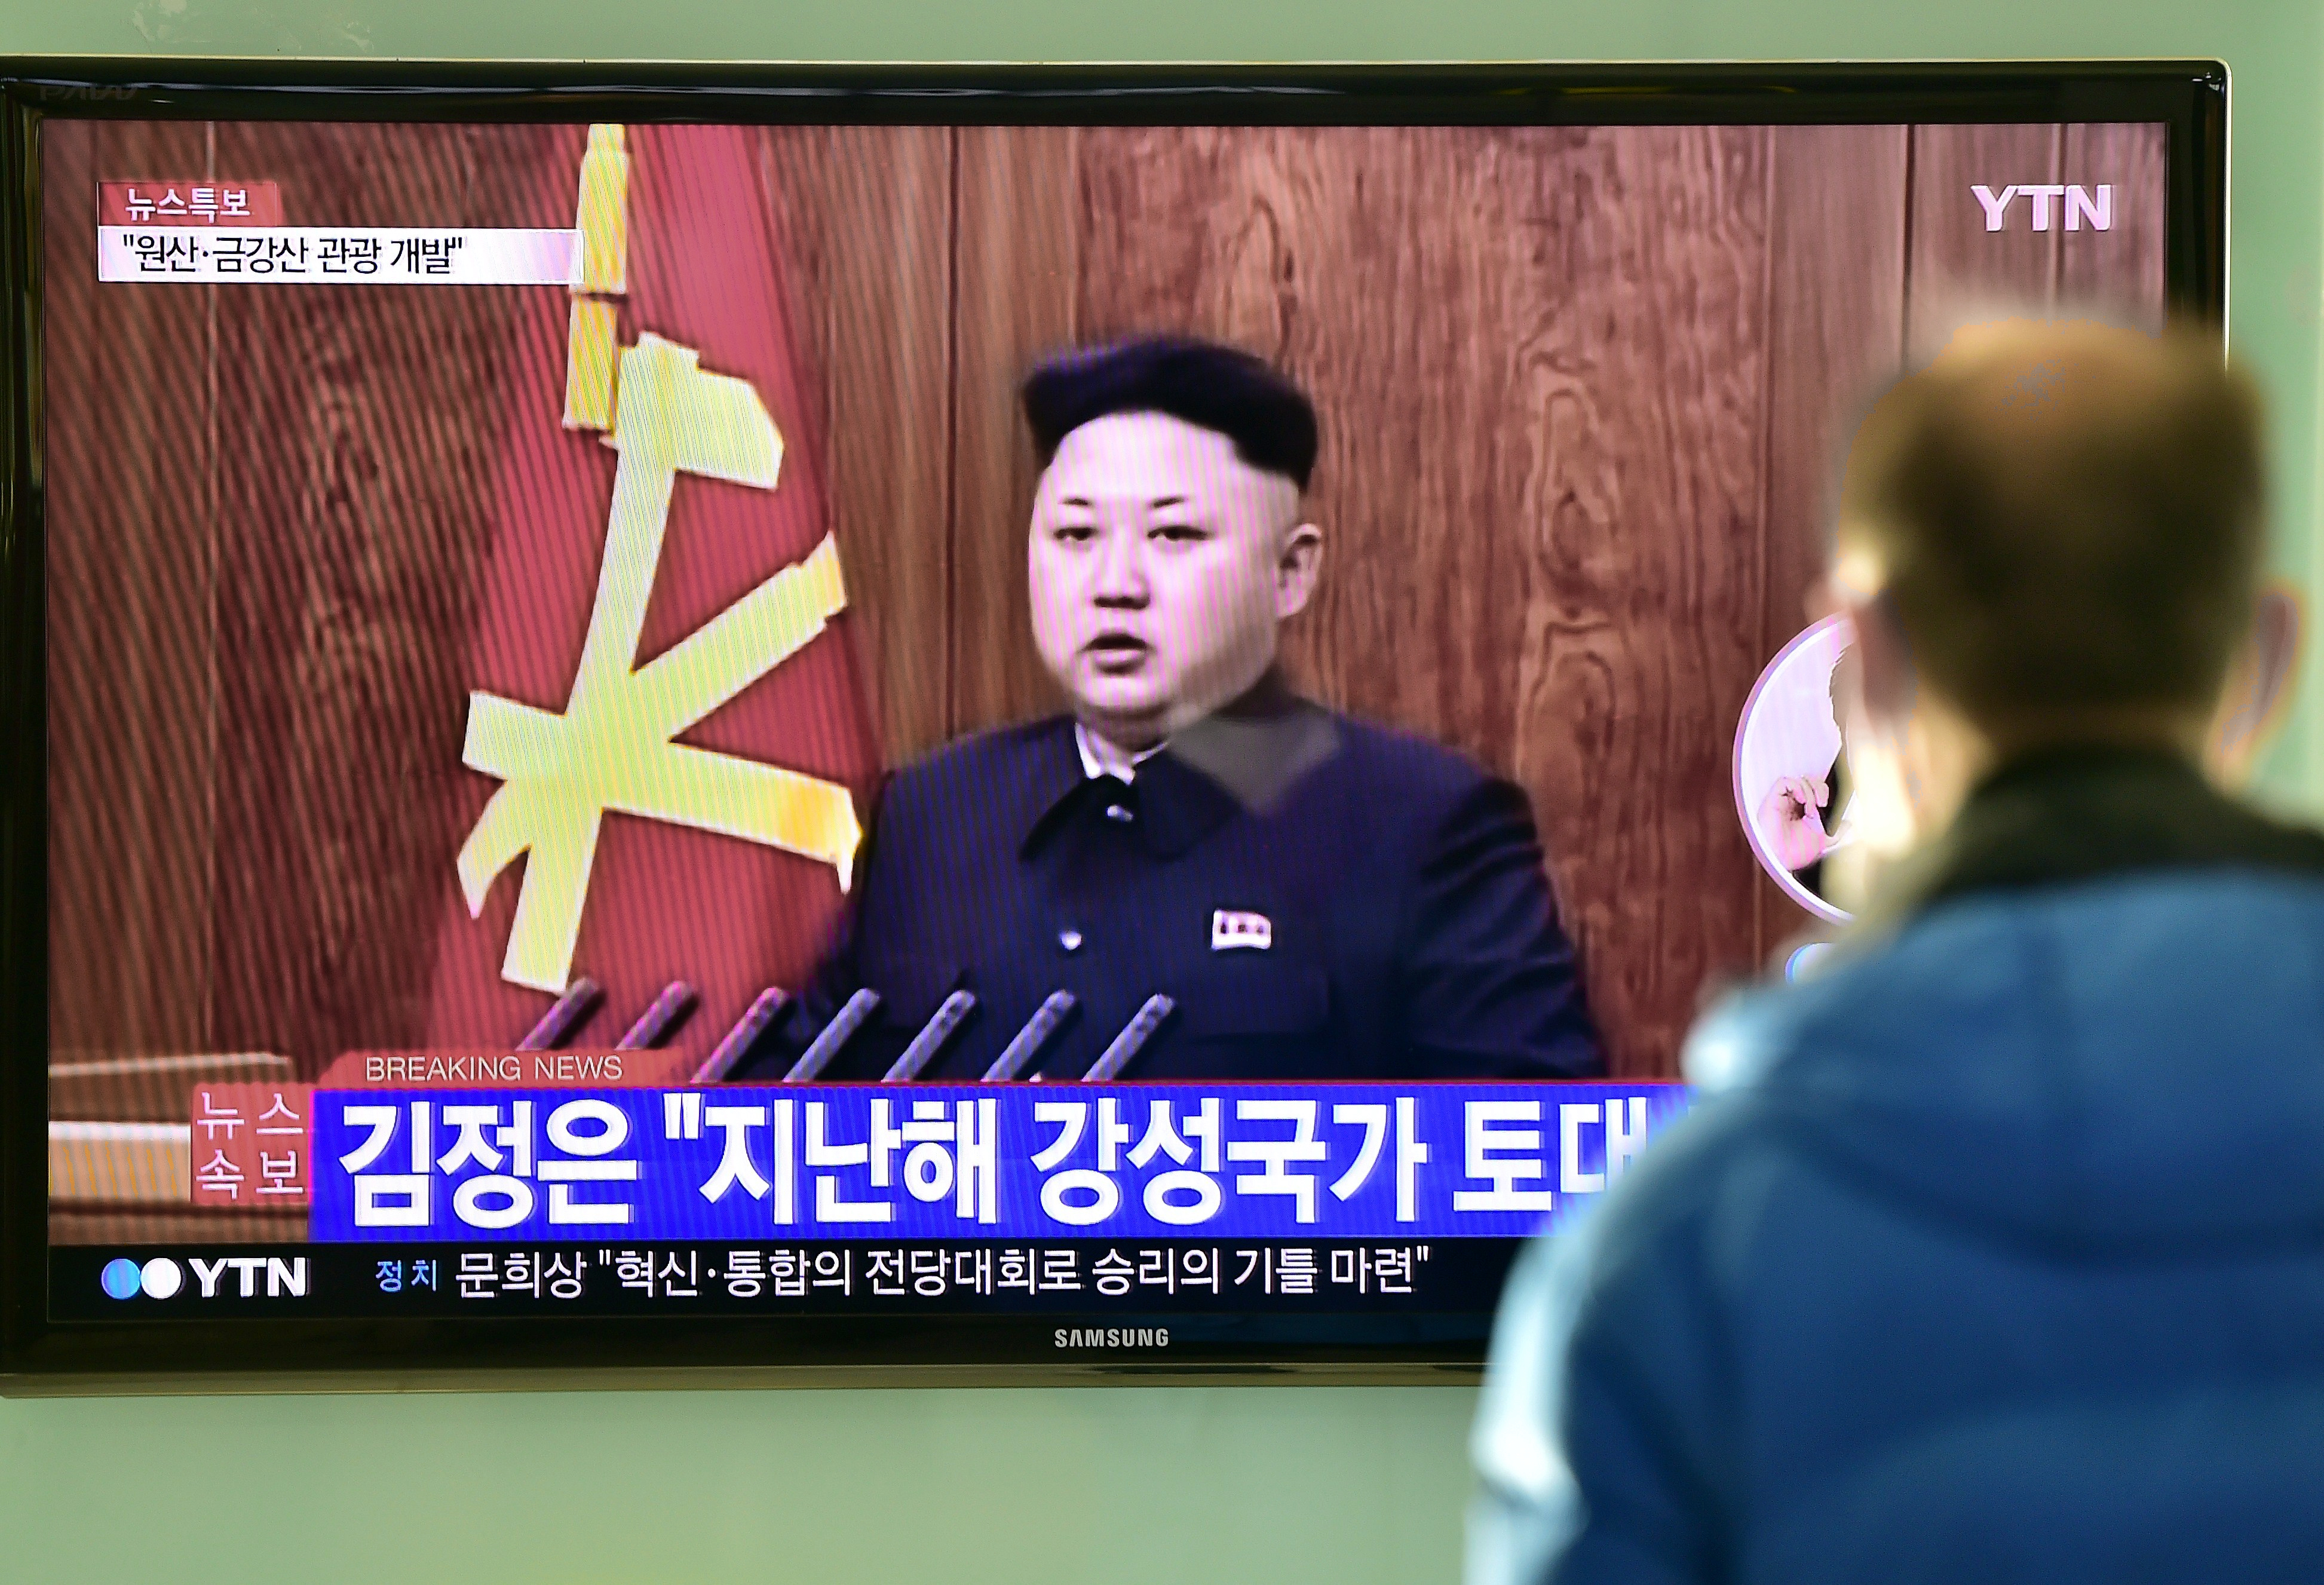 So reagiert Südkorea auf Kim Jong Uns Annäherung in der Neujahrsansprache